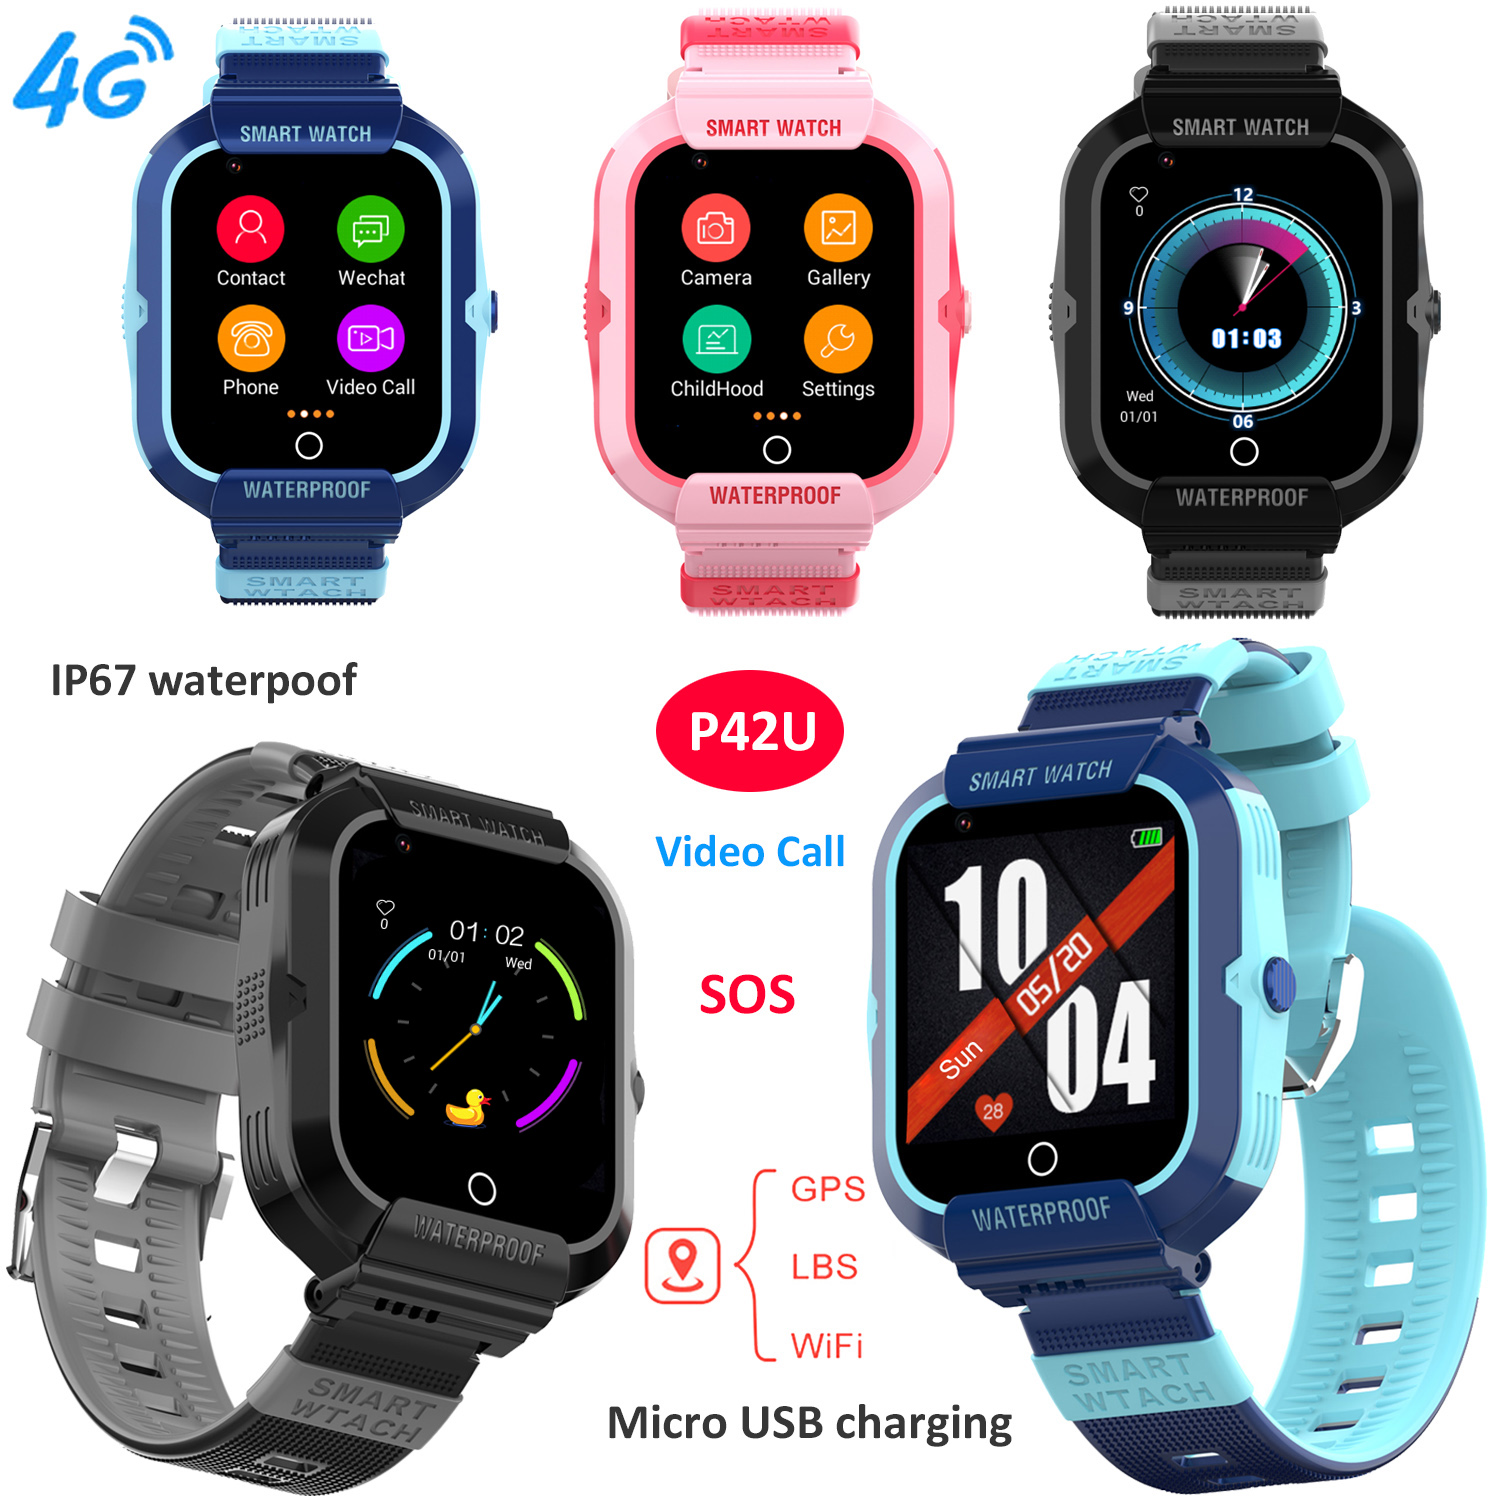 4G IP67 waterproof Kids GPS Smart watch for SOS Help P42U